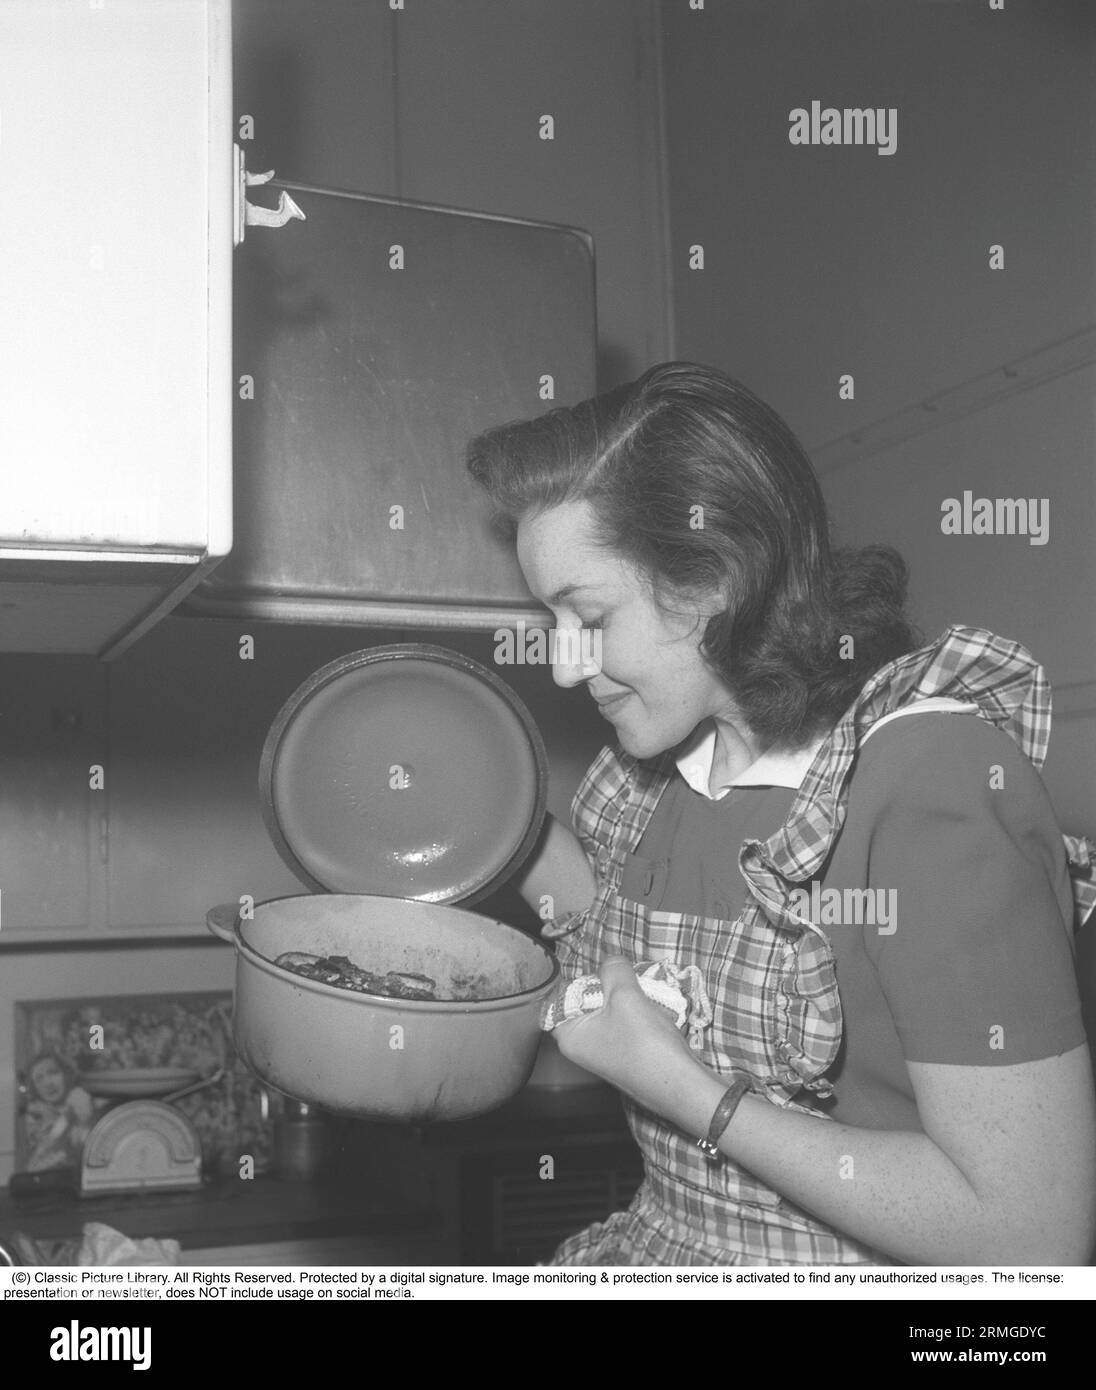 Dans la cuisine 1940s. Intérieur d'une cuisine et une jeune femme soulevant le couvercle d'une casserole bouillante et semble heureuse de la façon dont il s'est avéré. Suède 1946 Kristoffersson ref CC122-1 Banque D'Images